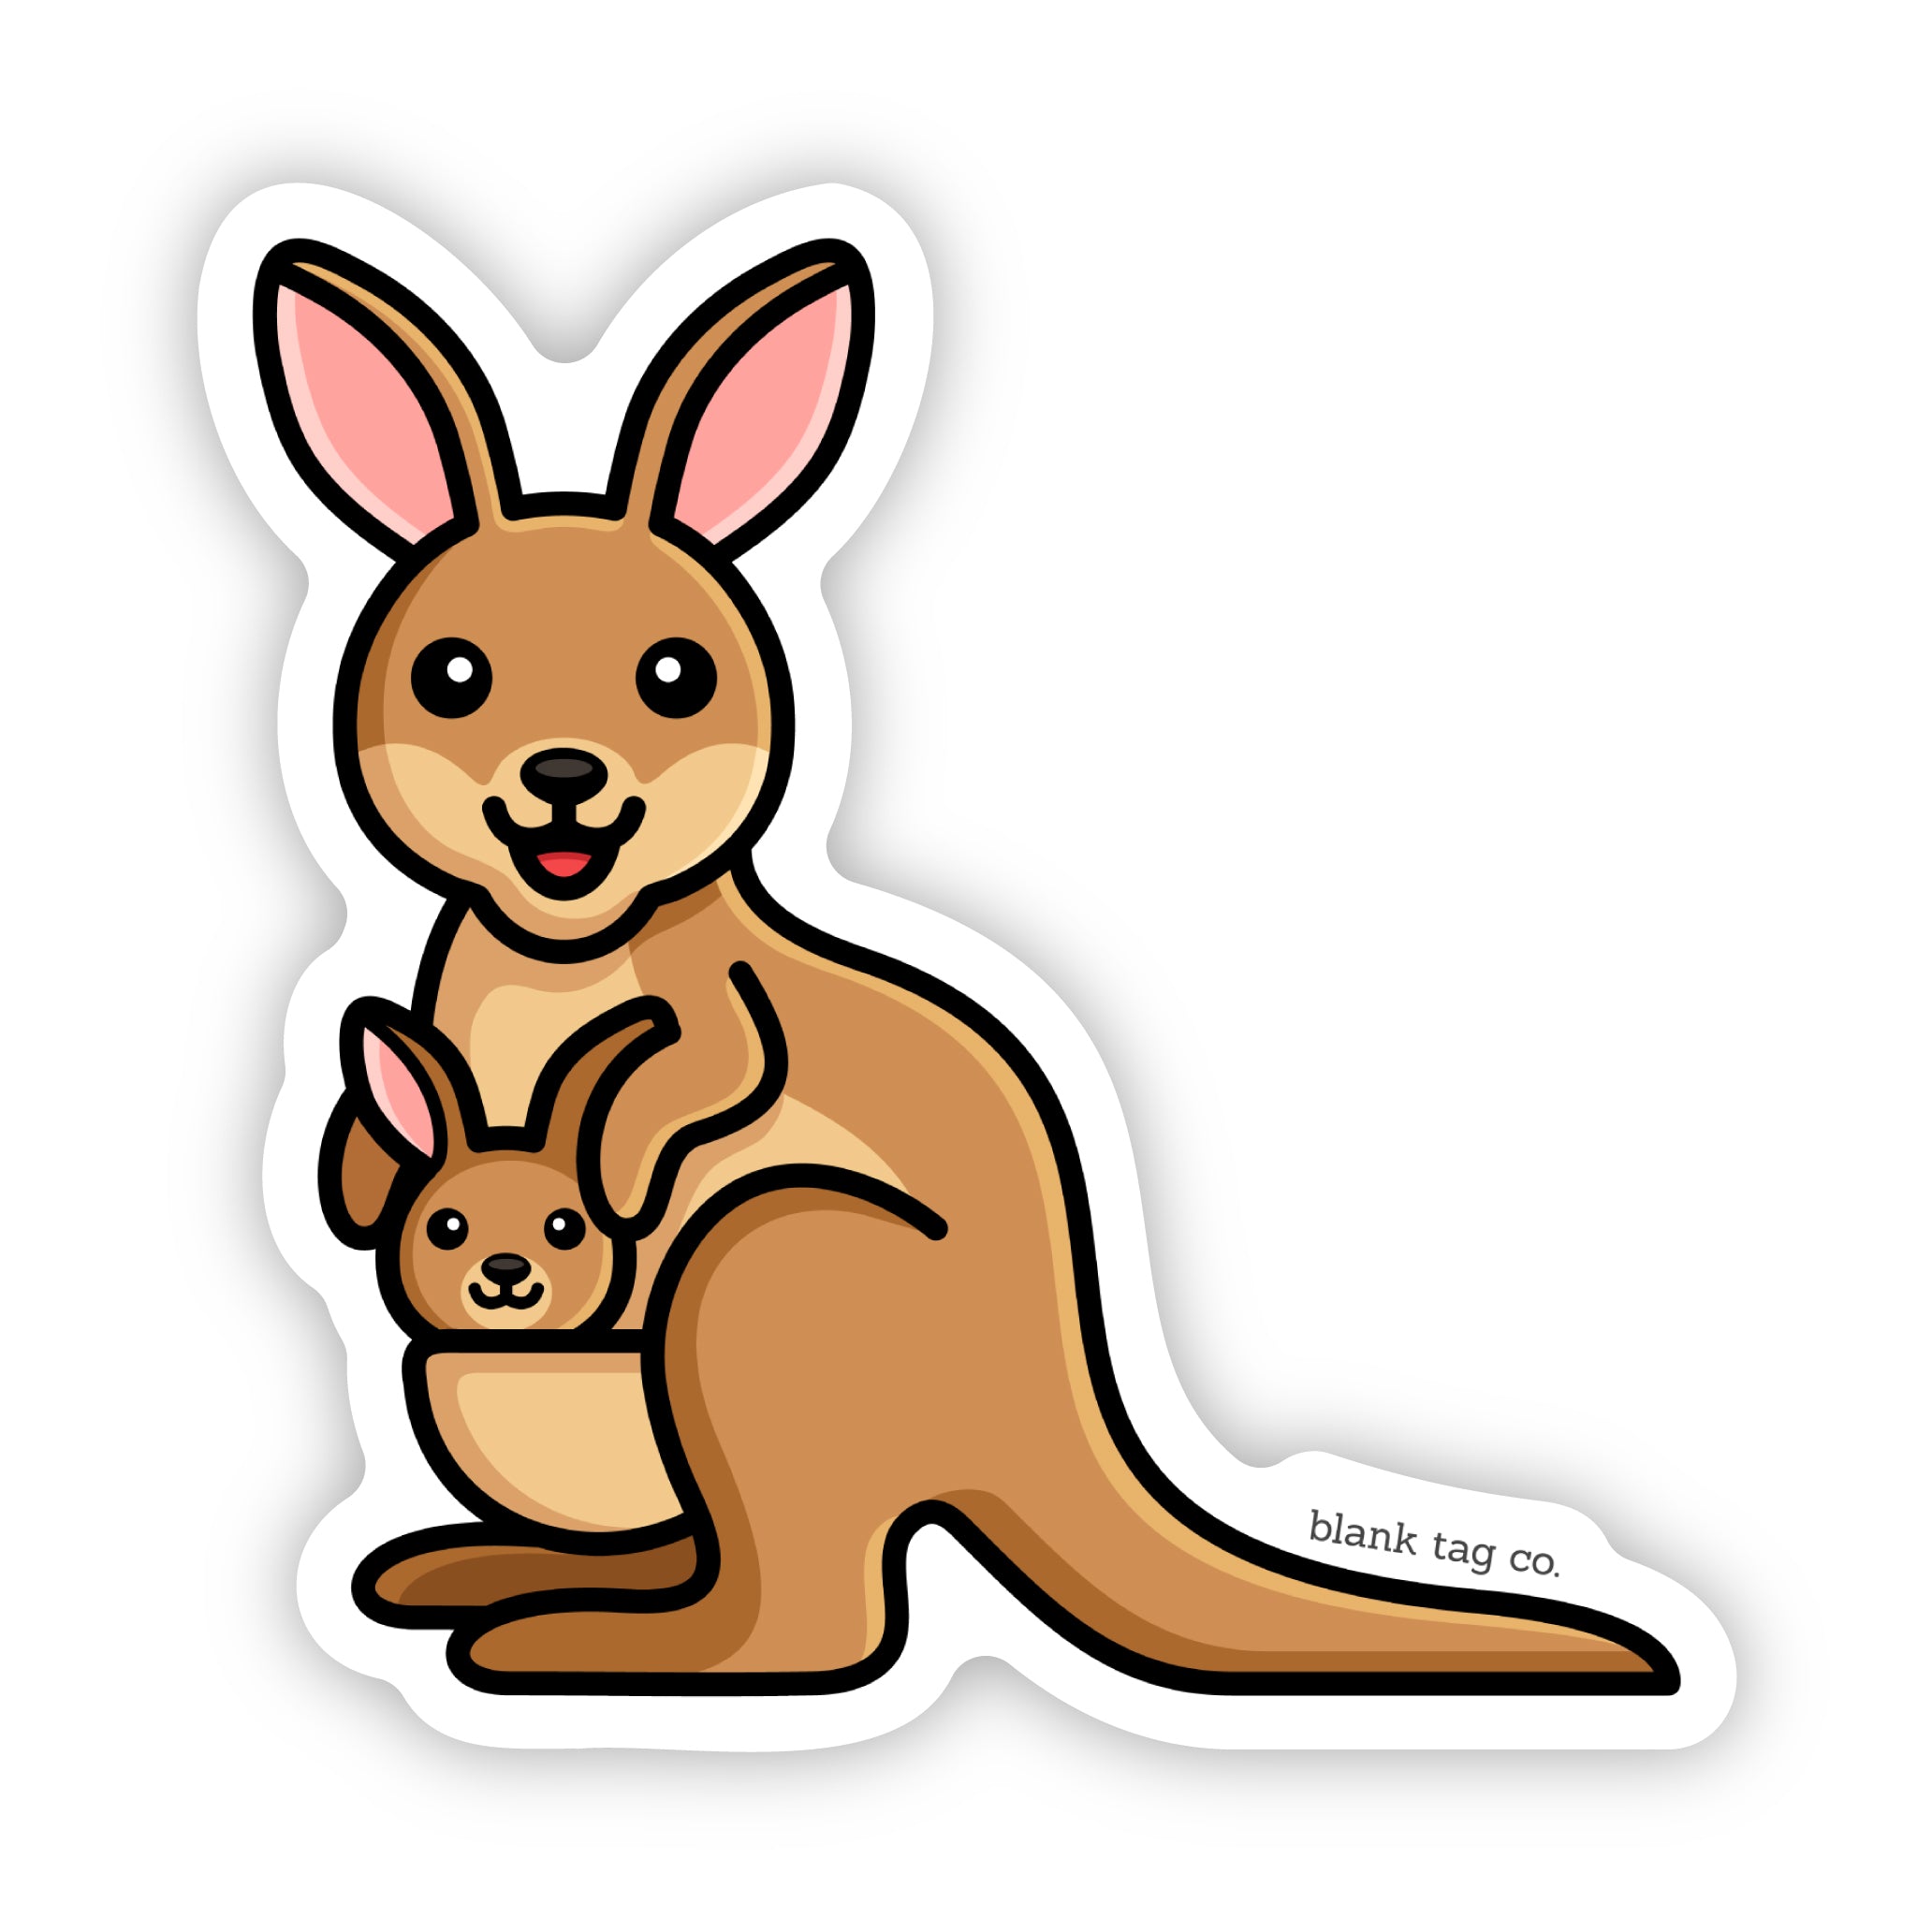 The Kangaroo Sticker